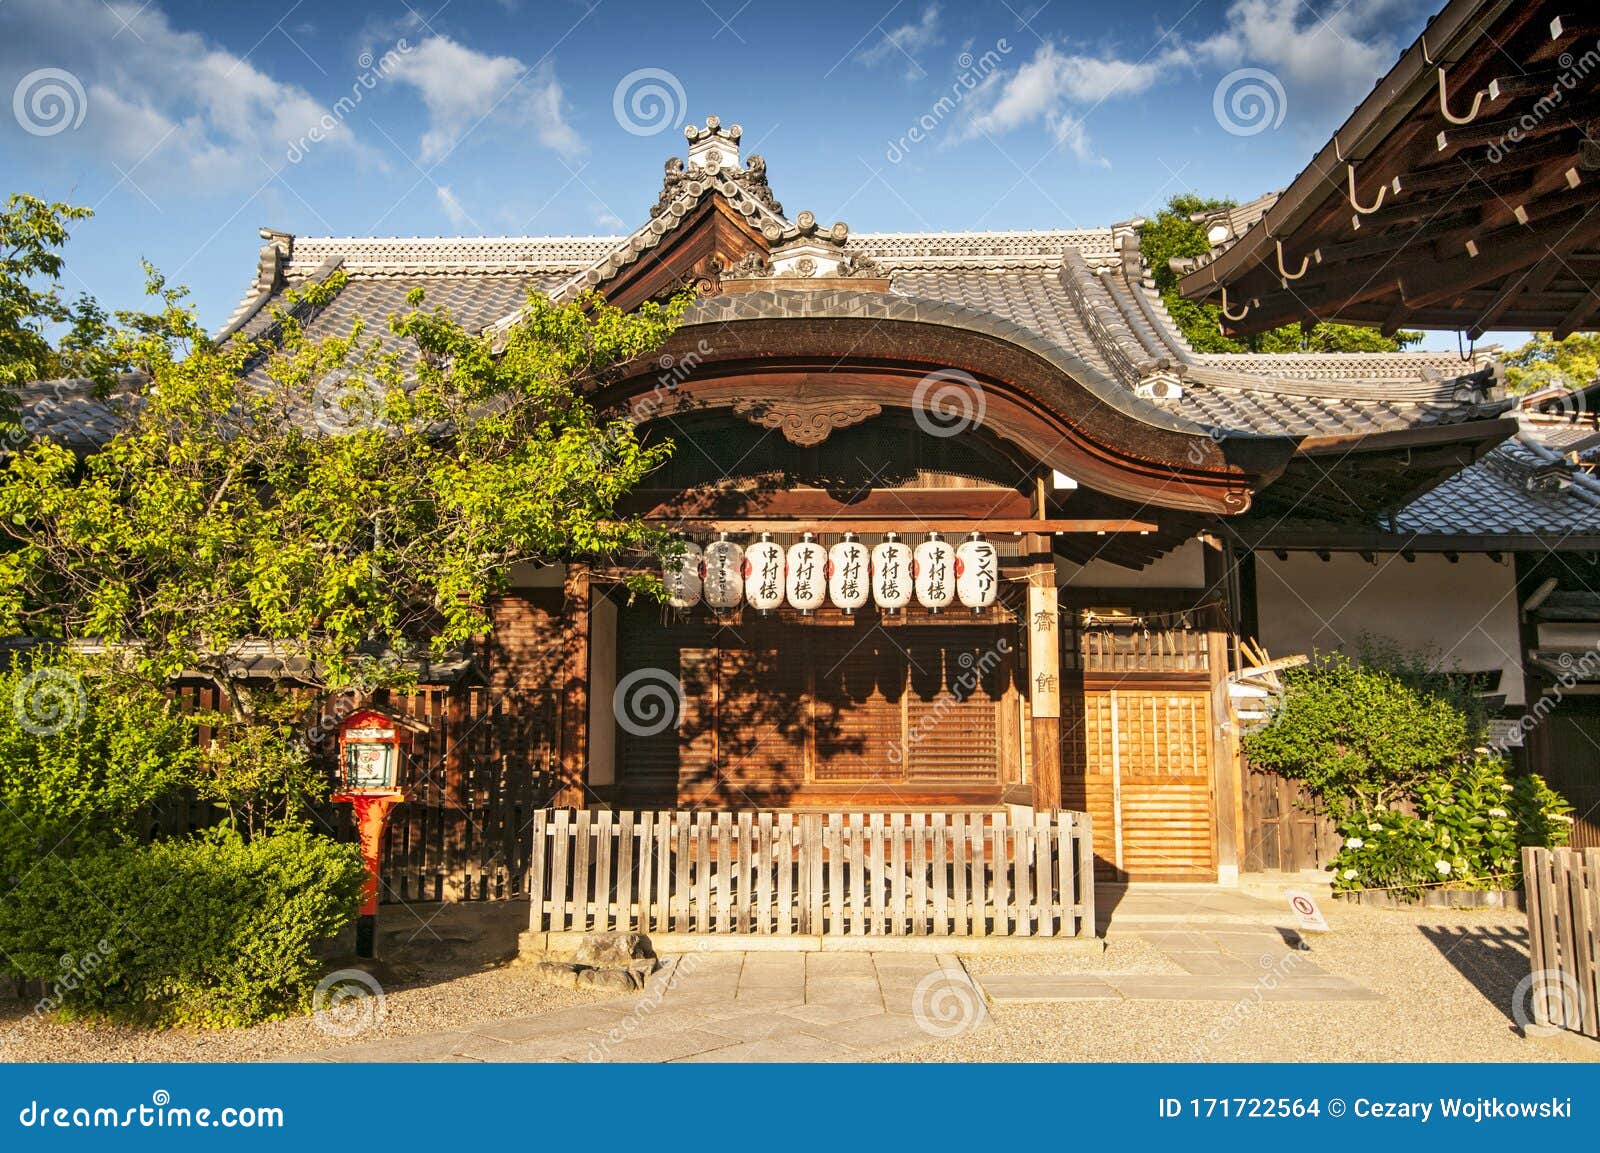 日本京都神社八坂神社 又名只园神社 是京都只园神社编辑类库存图片 图片包括有八坂神社 又名只园神社 是京都只园神社